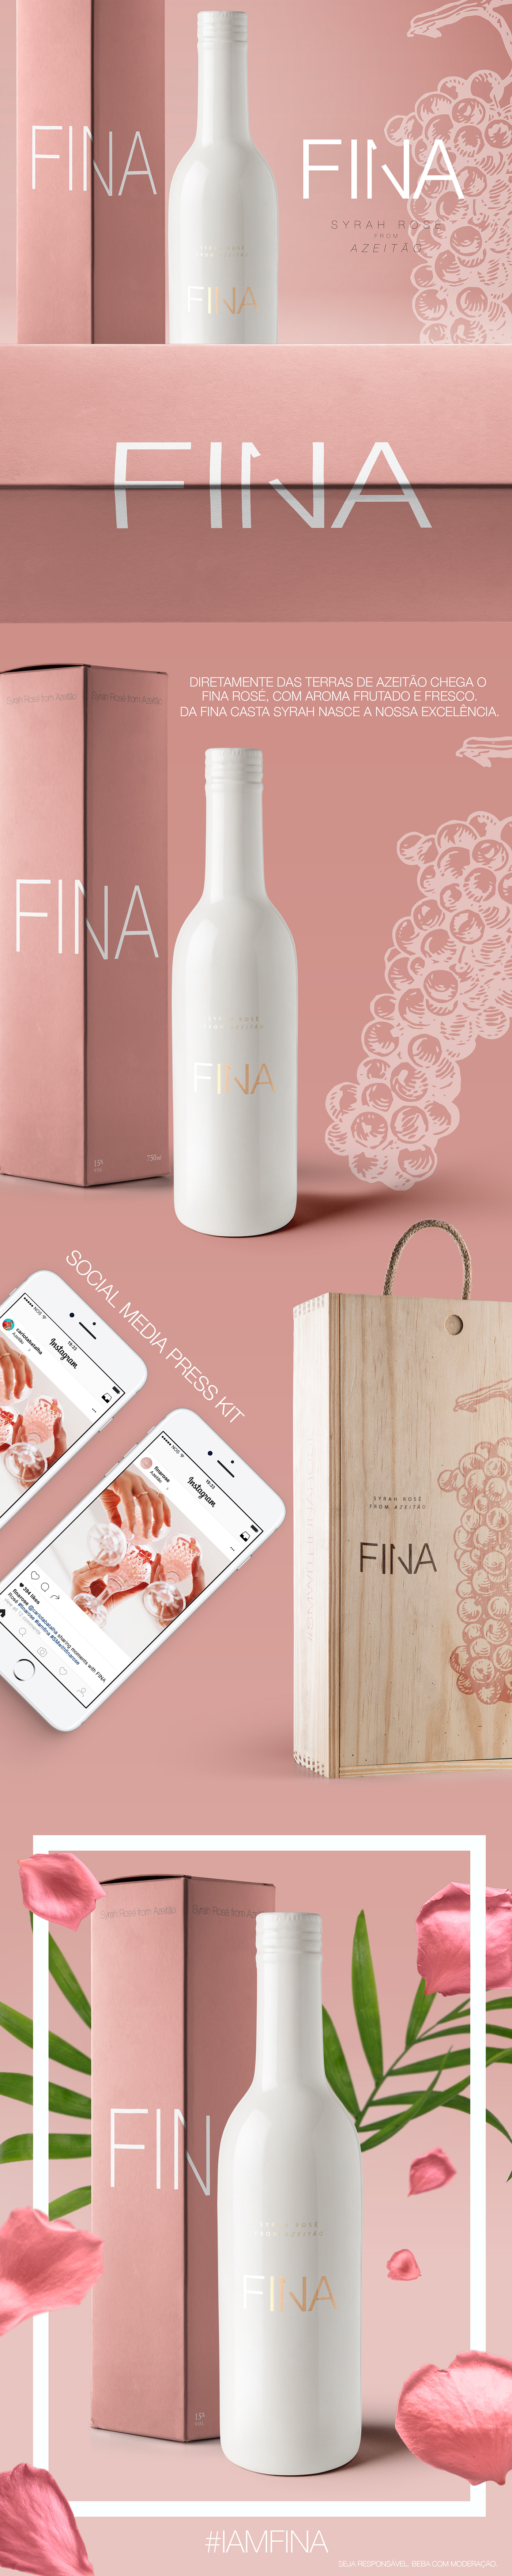 wine brand concept branding  design Packaging rose logo Advertising 